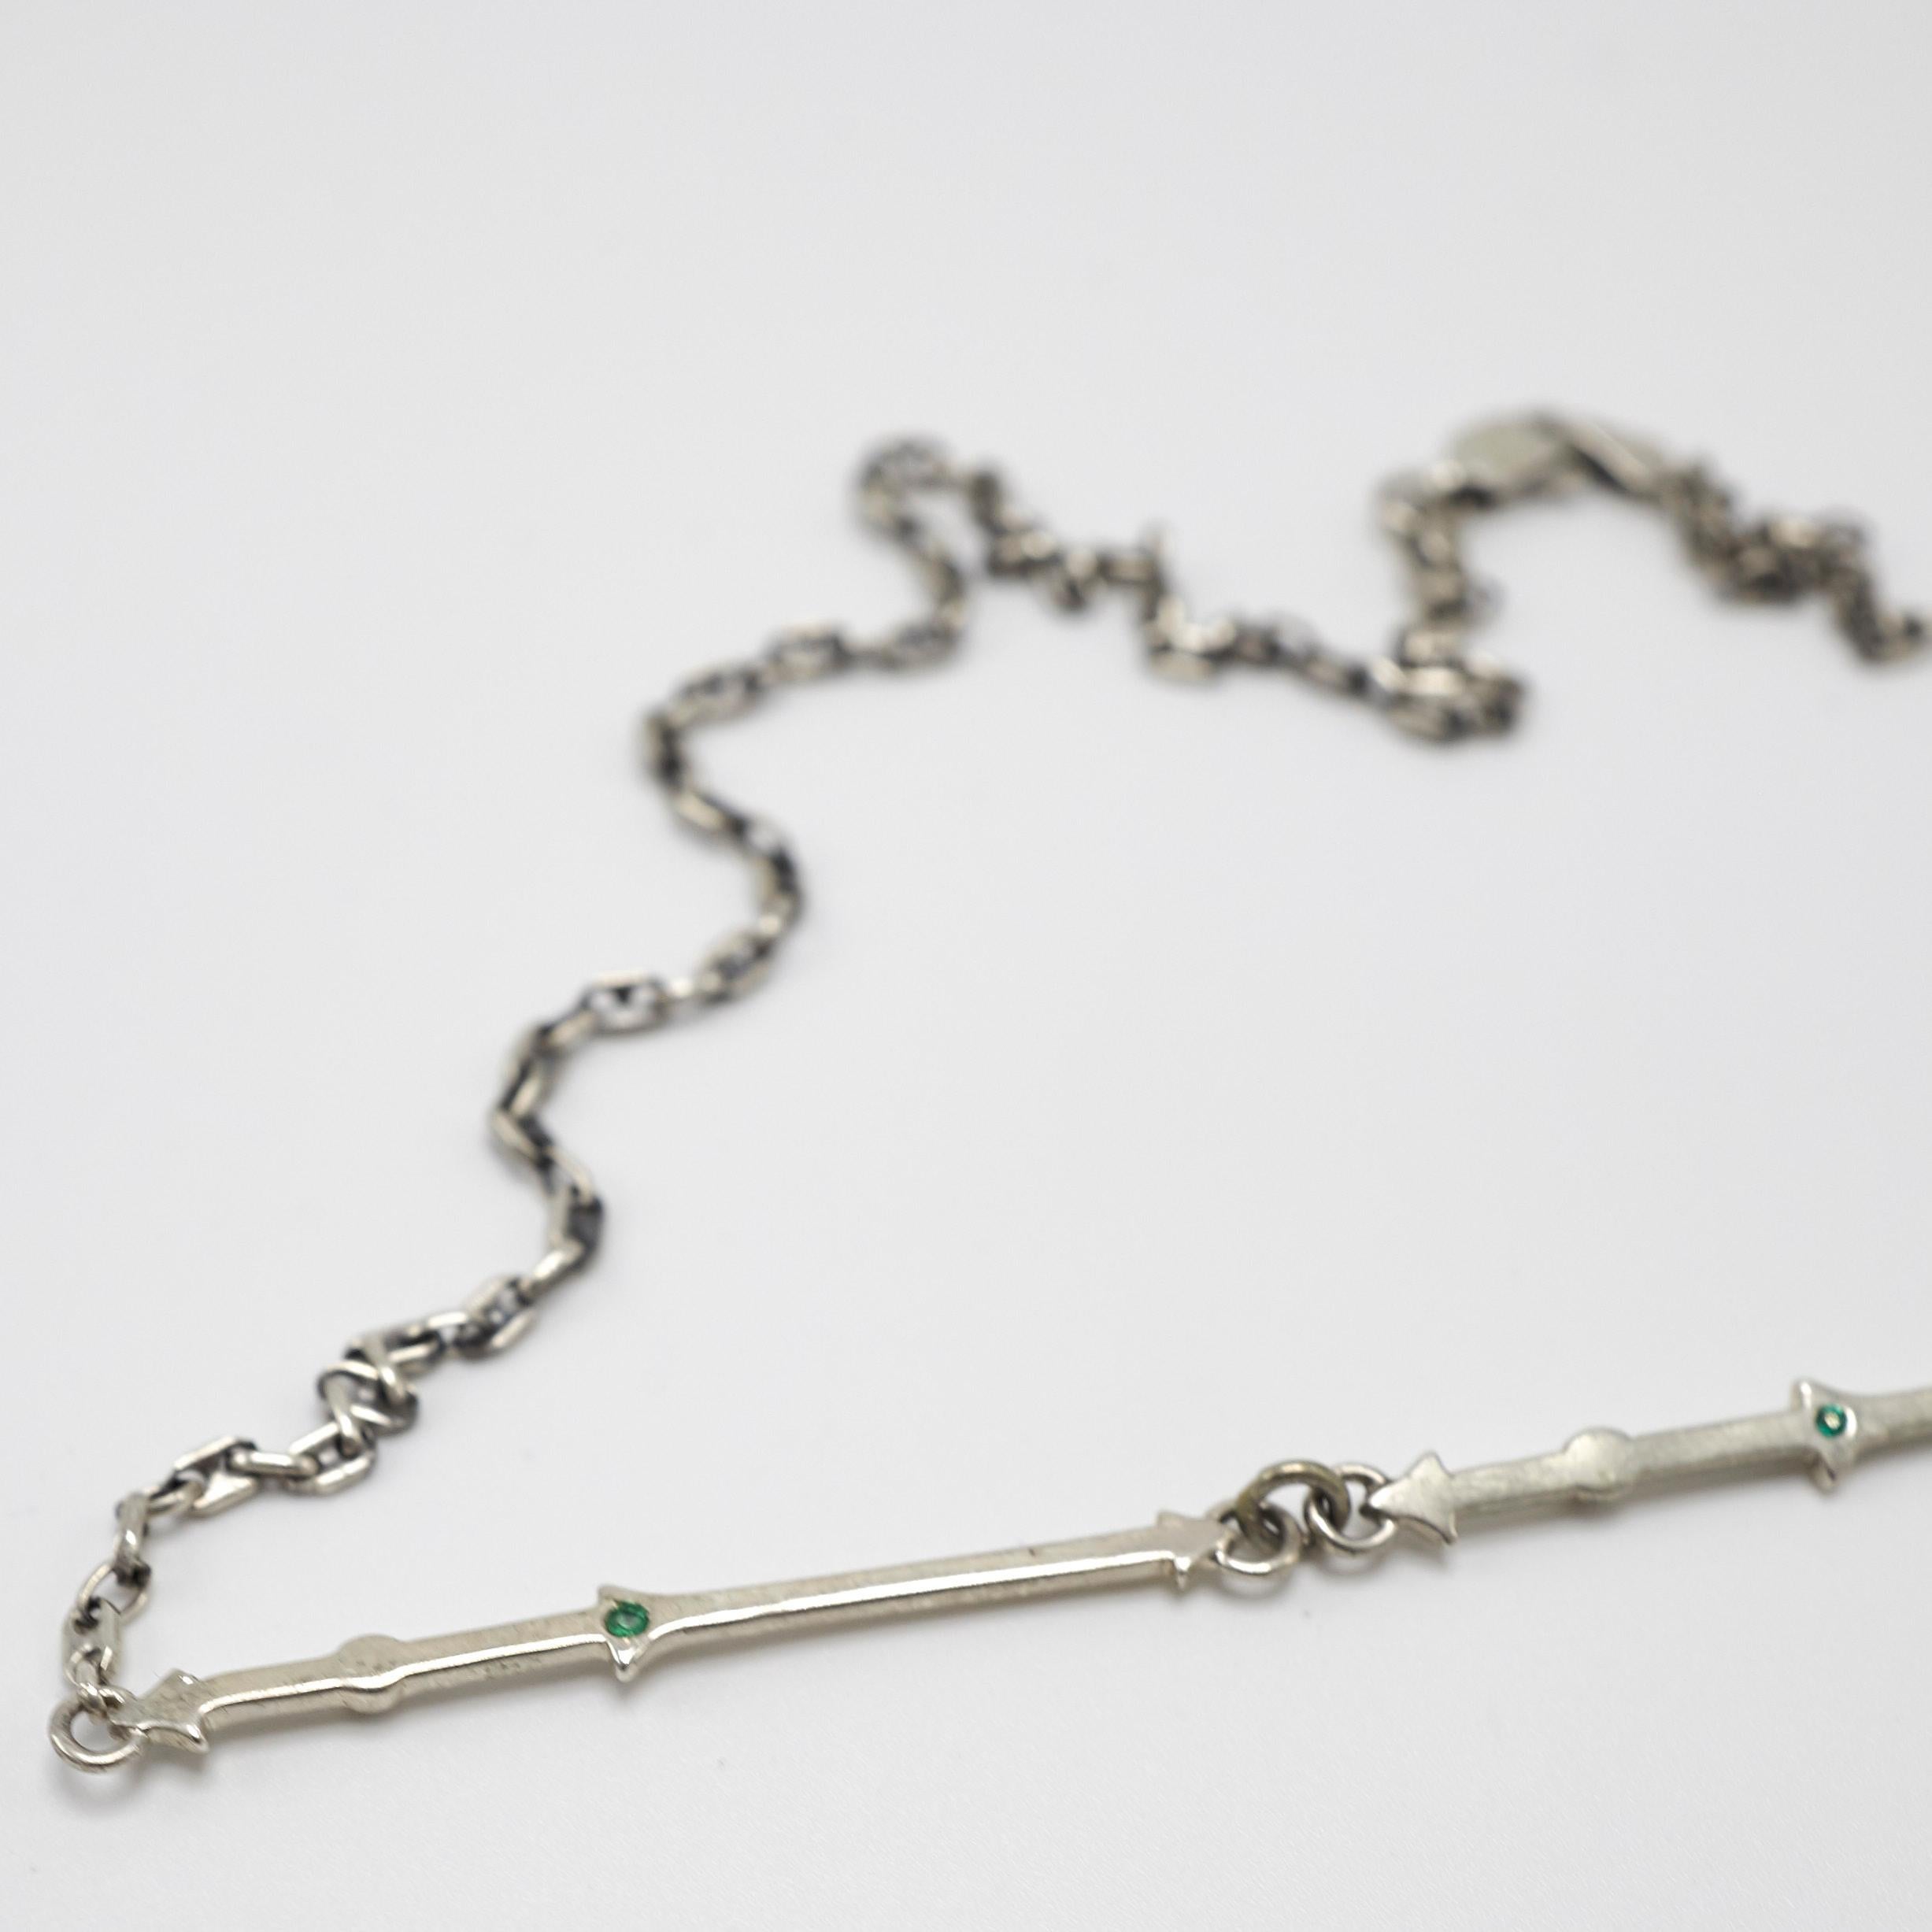 Smaragd Silber Kette Anhänger Halskette Choker J Dauphin
Hergestellt mit 3 Smaragden

J DAUPHIN 